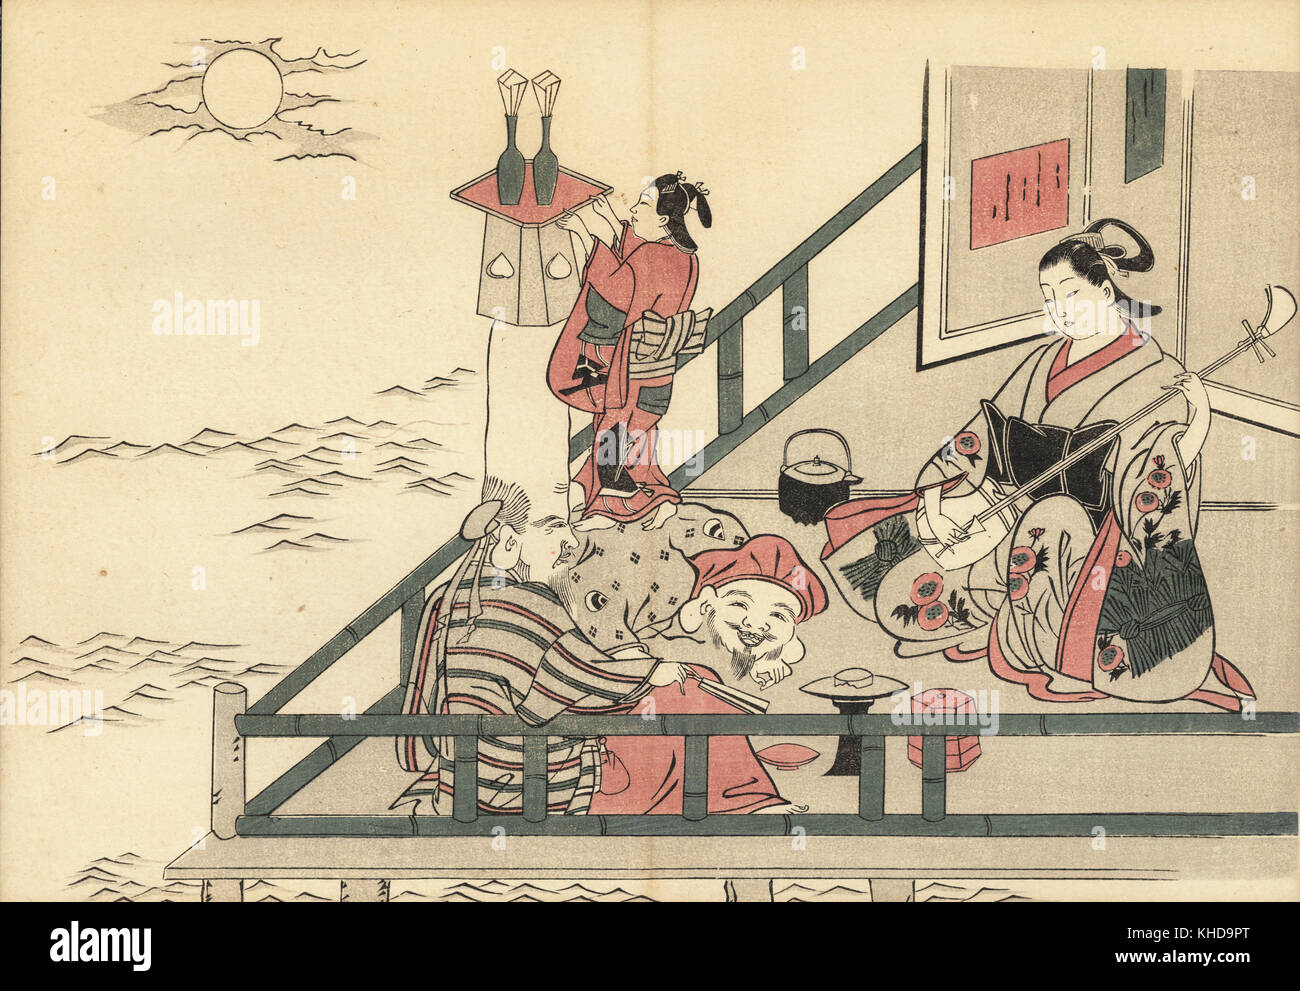 La lecture d'une courtisane pour les clients de shamisen et Fukurokuju Daikokuten des sept dieux de la chance. Une femme se tient sur le dos de Daikokuten pour mettre une table et du saké sur la tête de bouteilles Fukurokuju. Gravure sur bois par Okumura Masanobu (1686-1764), Photo de Fuzoku Emakimono Faire défiler du commerce de l'eau, Tokyo, réimpression vers 1880. Banque D'Images